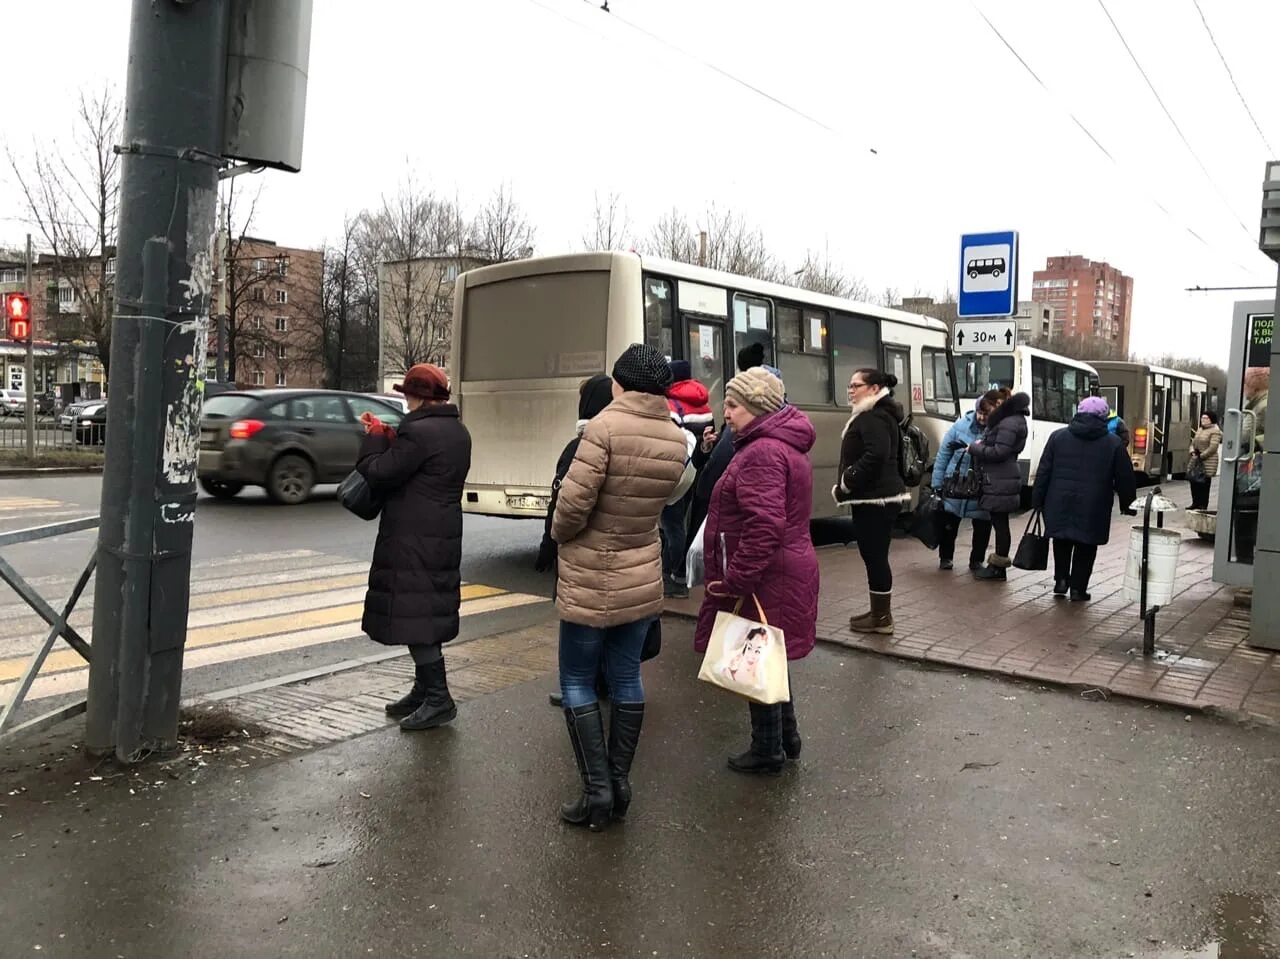 Аня ждет автобус на остановке. Люди на остановке. Остановки общественного транспорта Ярославль. Люди ждут транспорт на остановке. Люди на остановке Ярославль.